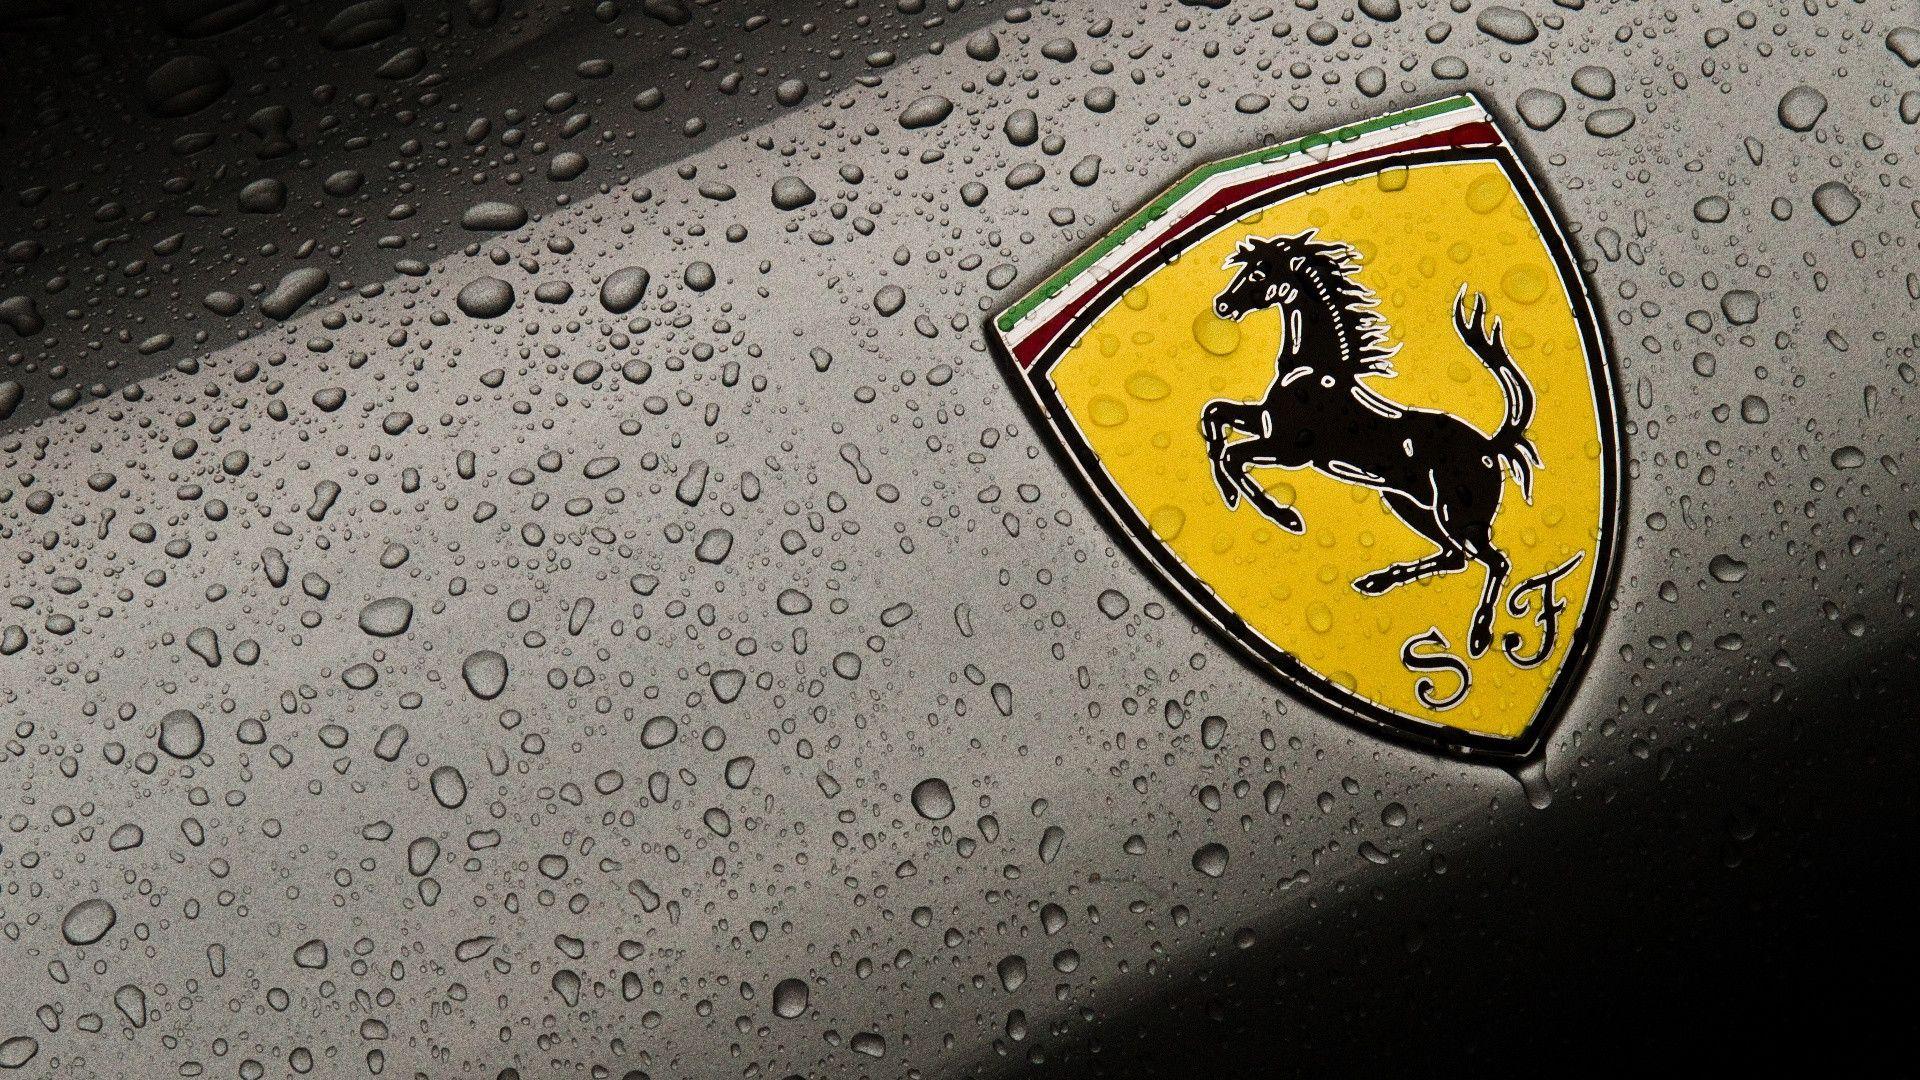 New Ferrari Logo HD Wallpaper 1080p. Widescreen Wallpaper. High